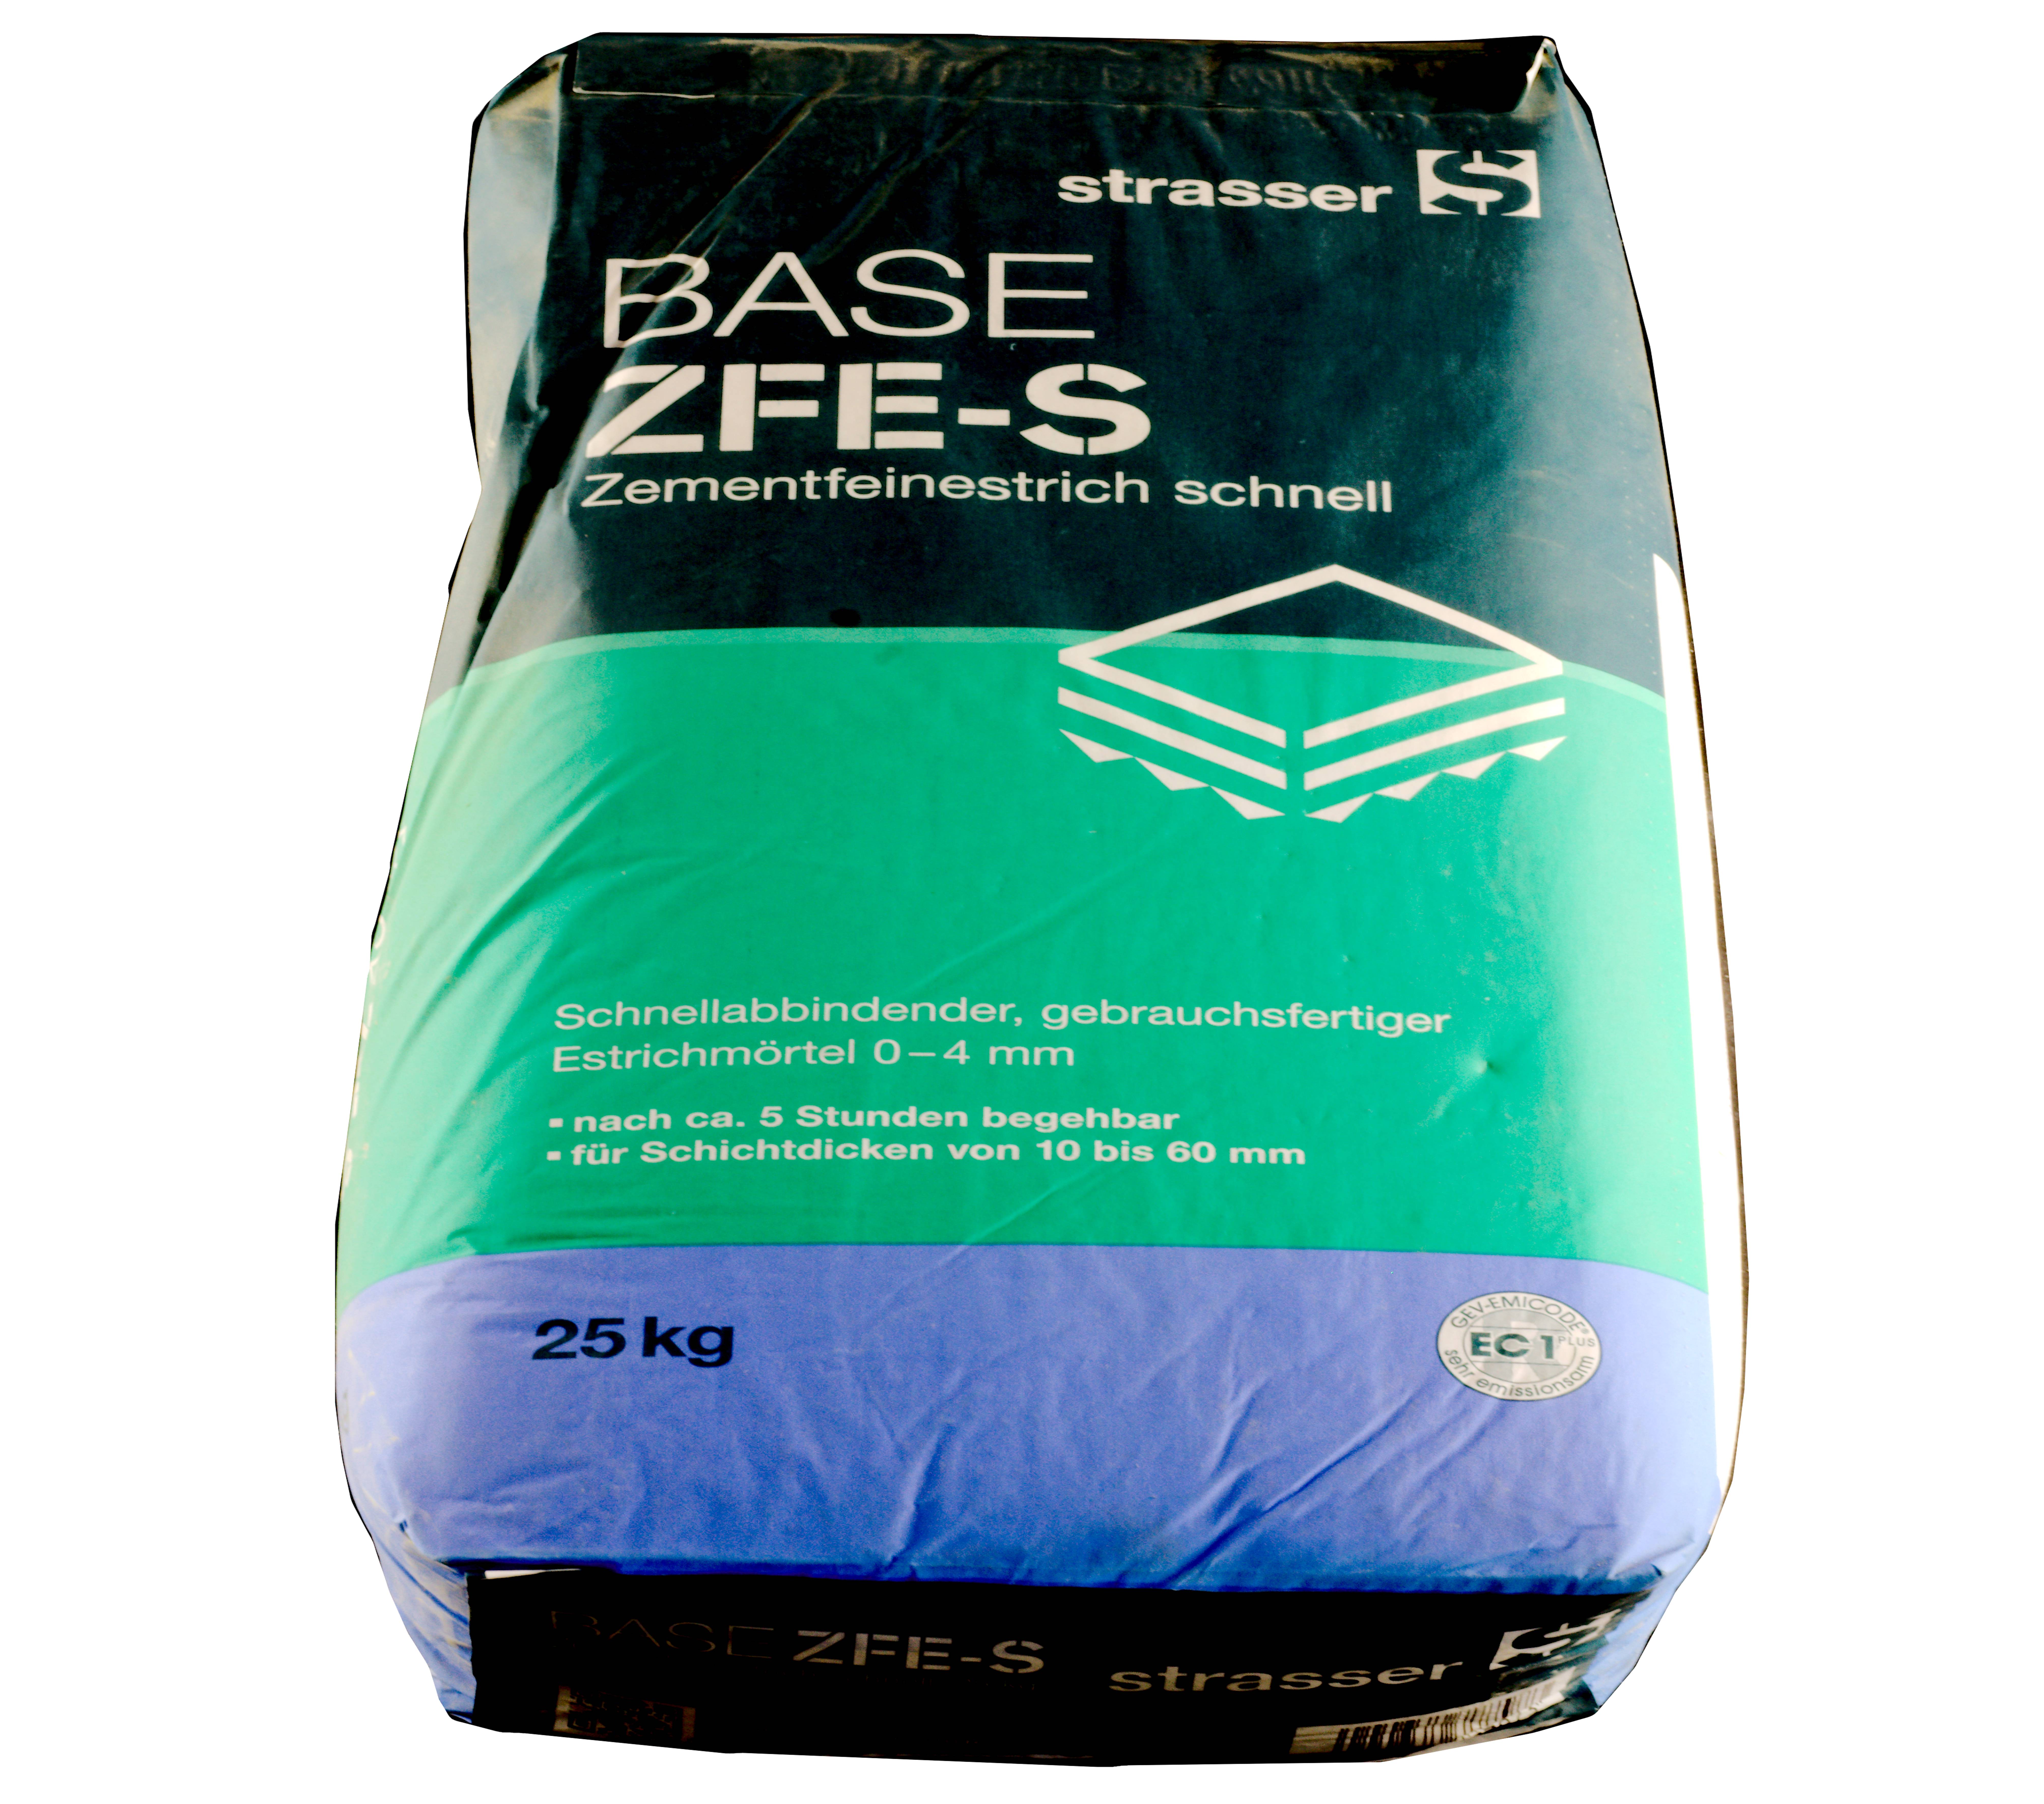 Strasser Base ZFE-S Zementfeinestrich schnell  25 kg